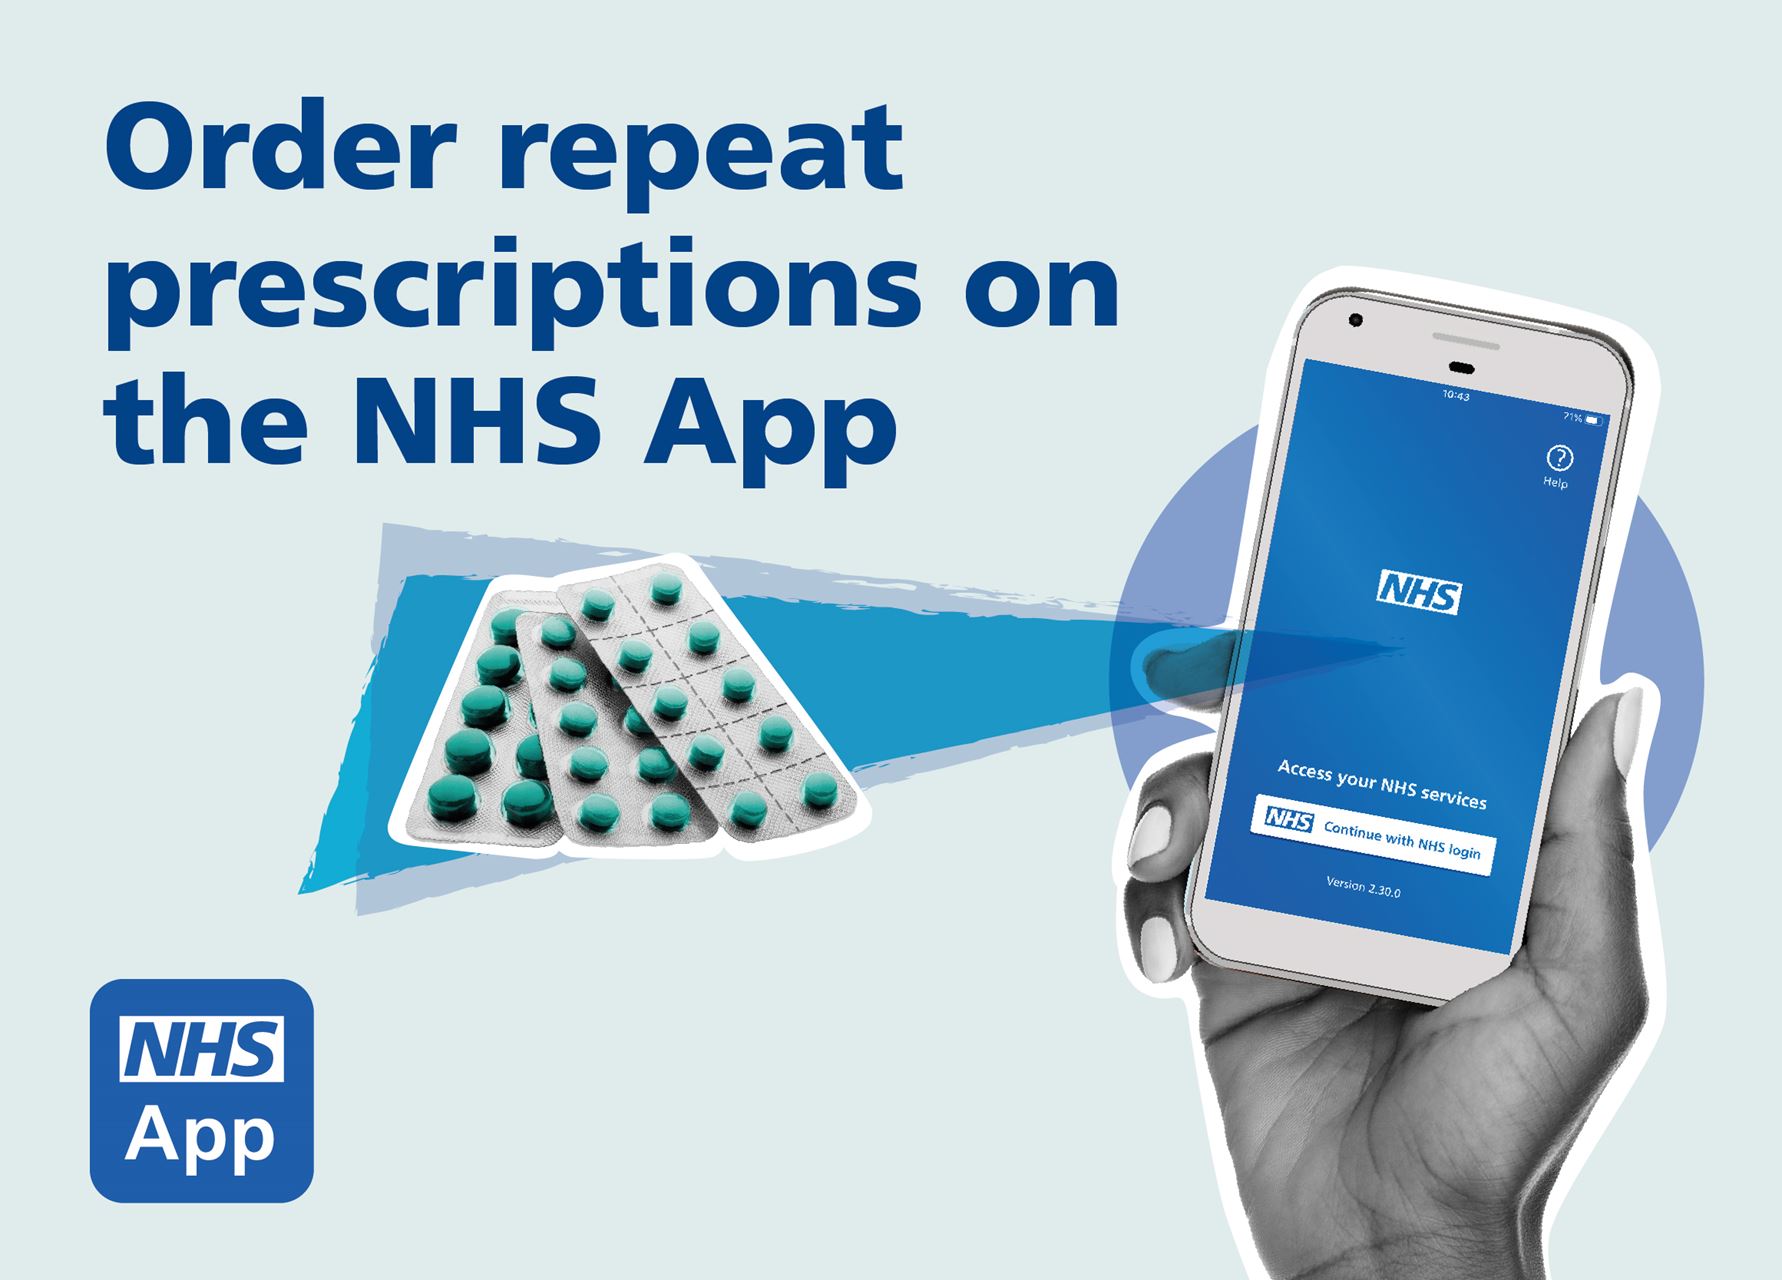 NHS App prescriptions